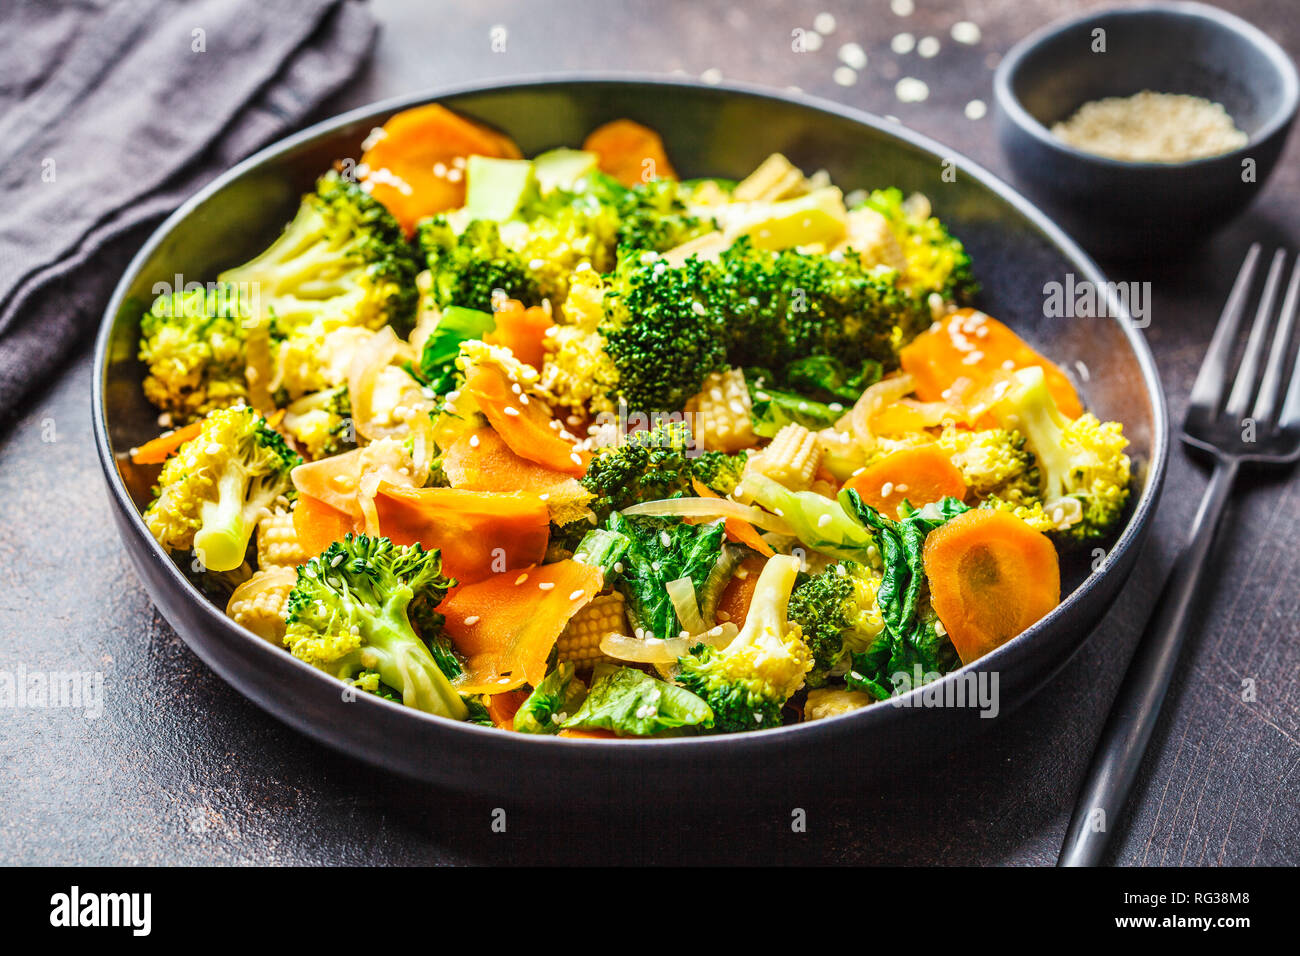 Vegan Wok braten mit Broccoli und Karotten in schwarz Schüssel rühren,  dunkle backgrond Stockfotografie - Alamy